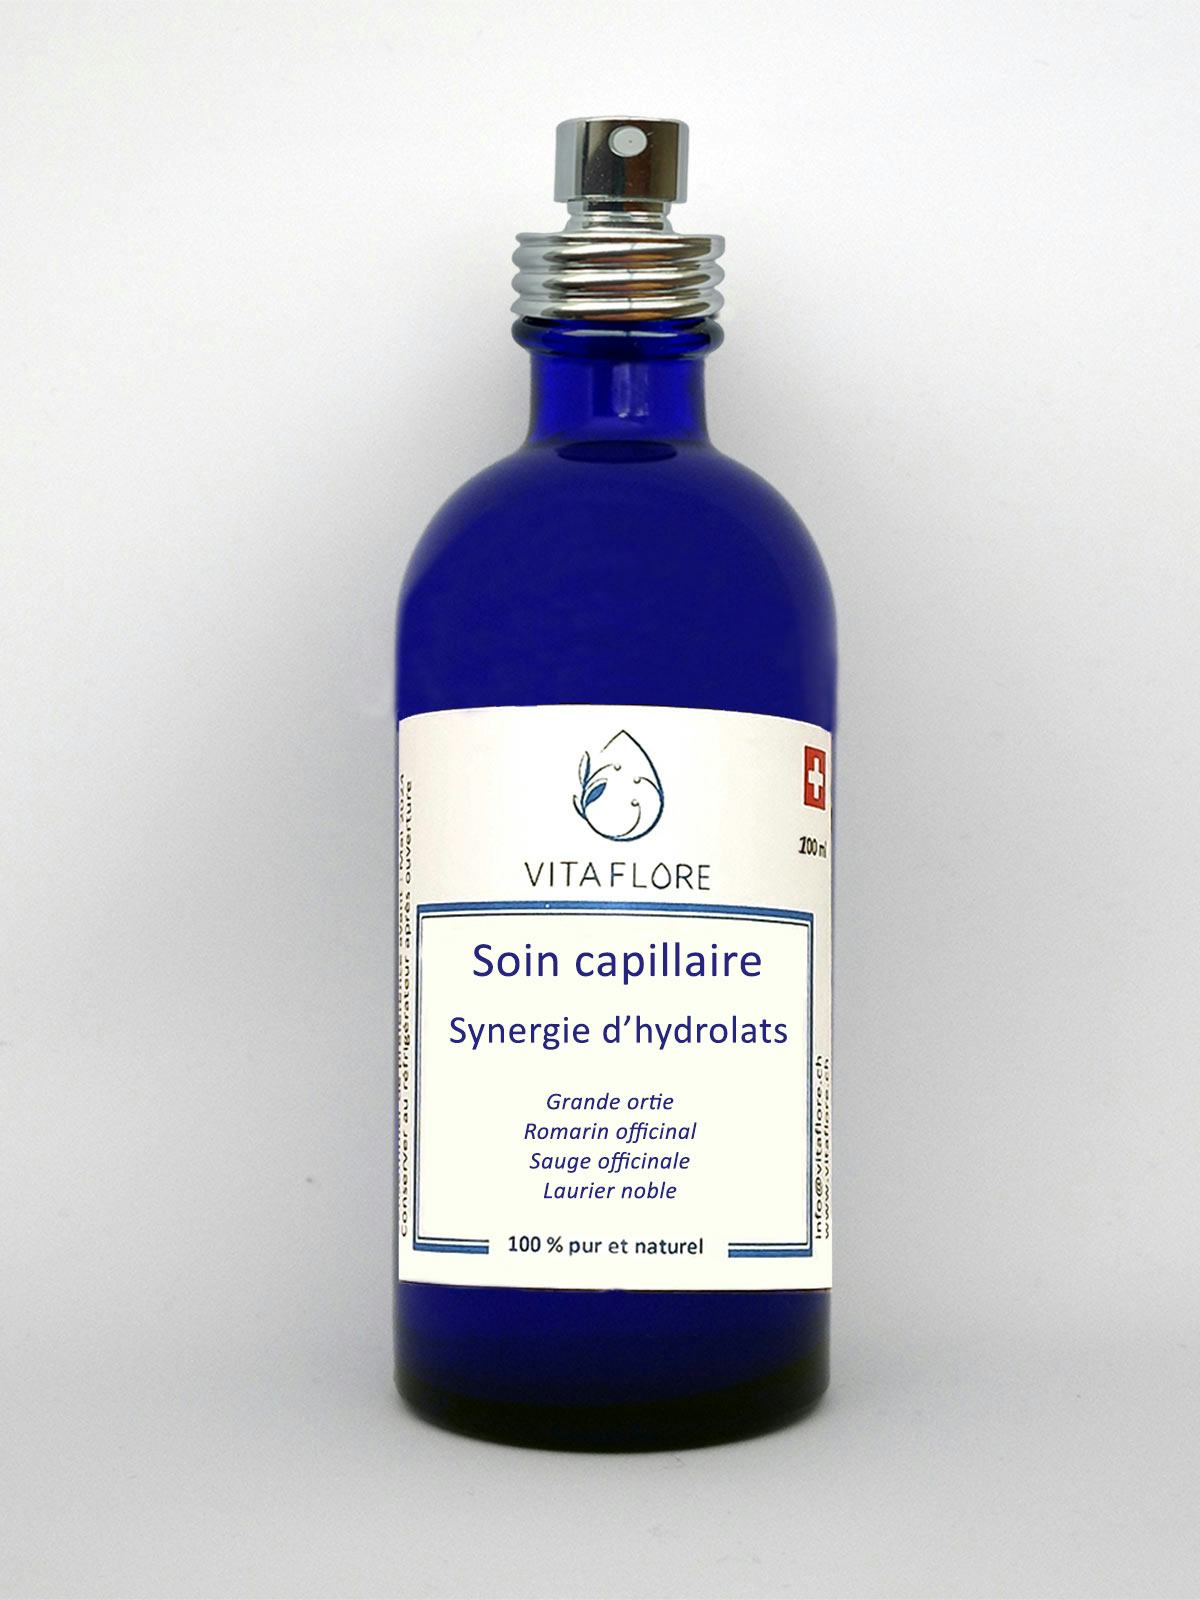 Synergie d’hydrolats – Soin capillaire, prodotto artigianale per la vendita diretta in Svizzera